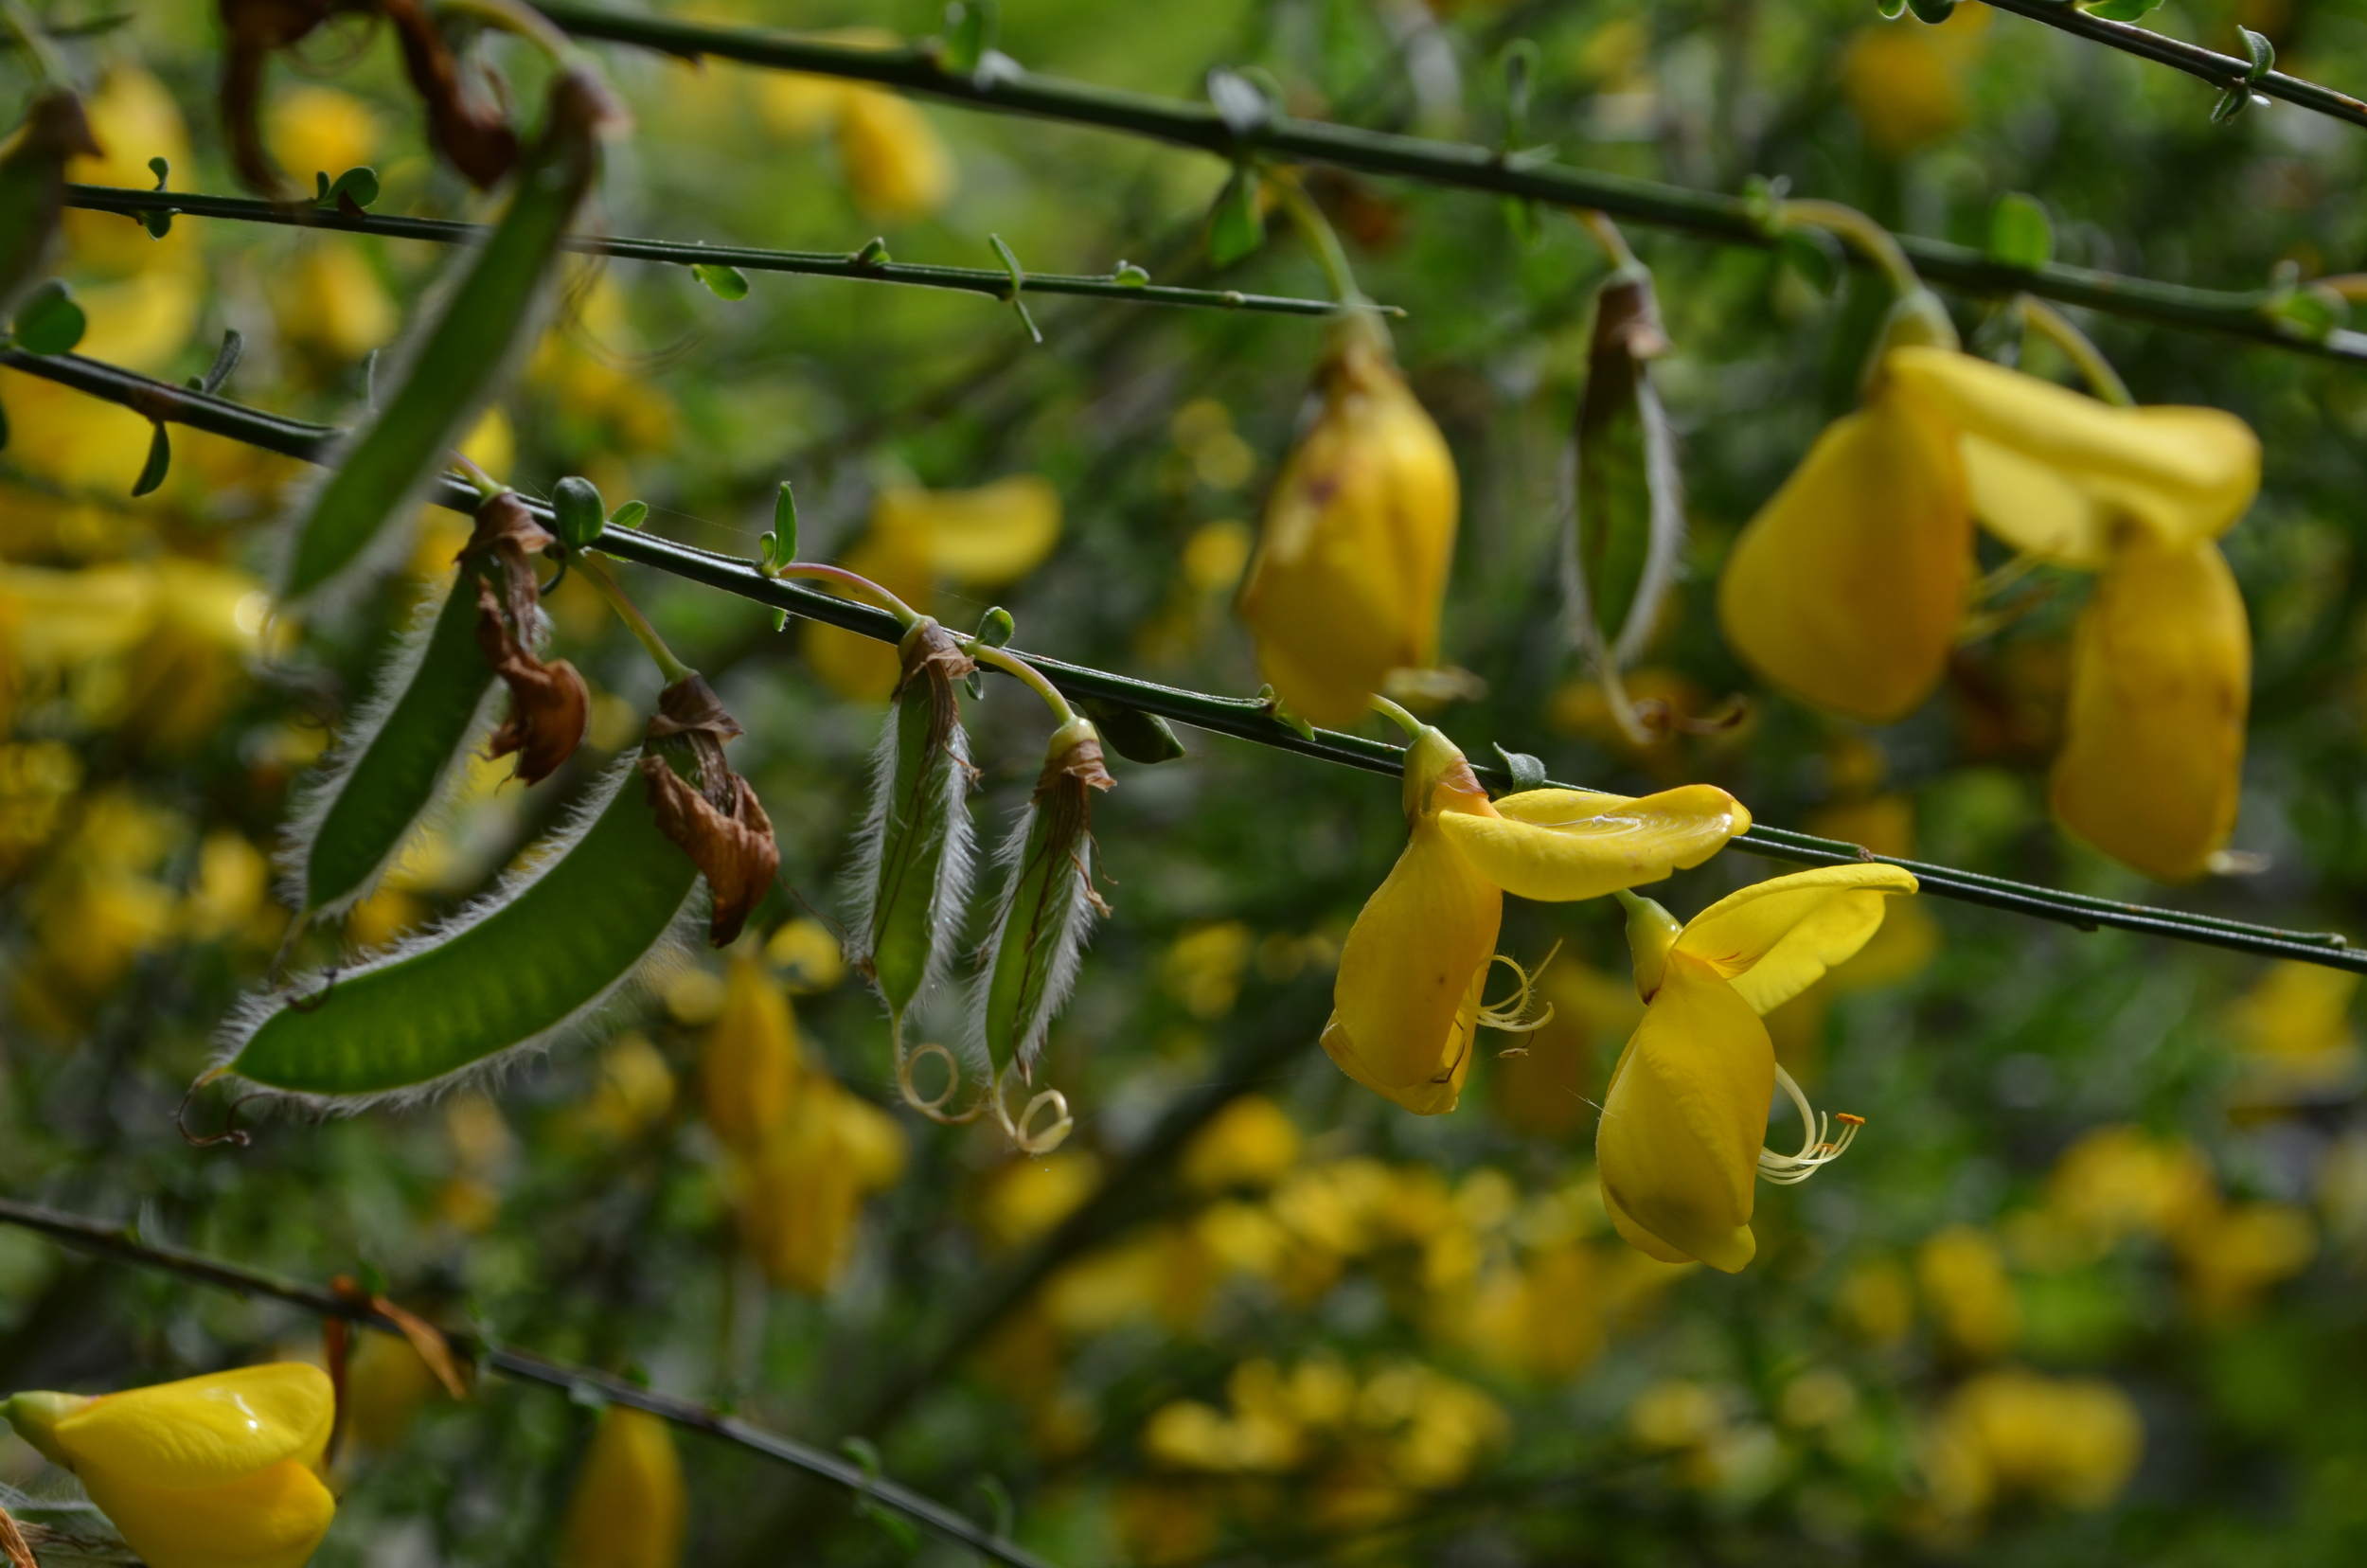   Citiso       scopario   ;     Cytisus scoparius    (Fabaceae)     
  
 
 
 
 
 
 
 
 
 
 
 
 
 
 
 
 
 
 
 
 
 
 
 
 
 
 
 
 
 
 
 
 
 
 
 
 
 
 
 
 
 
 
 
 
 
 
 
 
 
 
 
 
 
 
 
 
 
 
 
 
 
 
 
 
 
 
 
 
 
 
 
 
 
 
 
 
 
 
 
 
 
 
 
 
 
 
 
 
 
